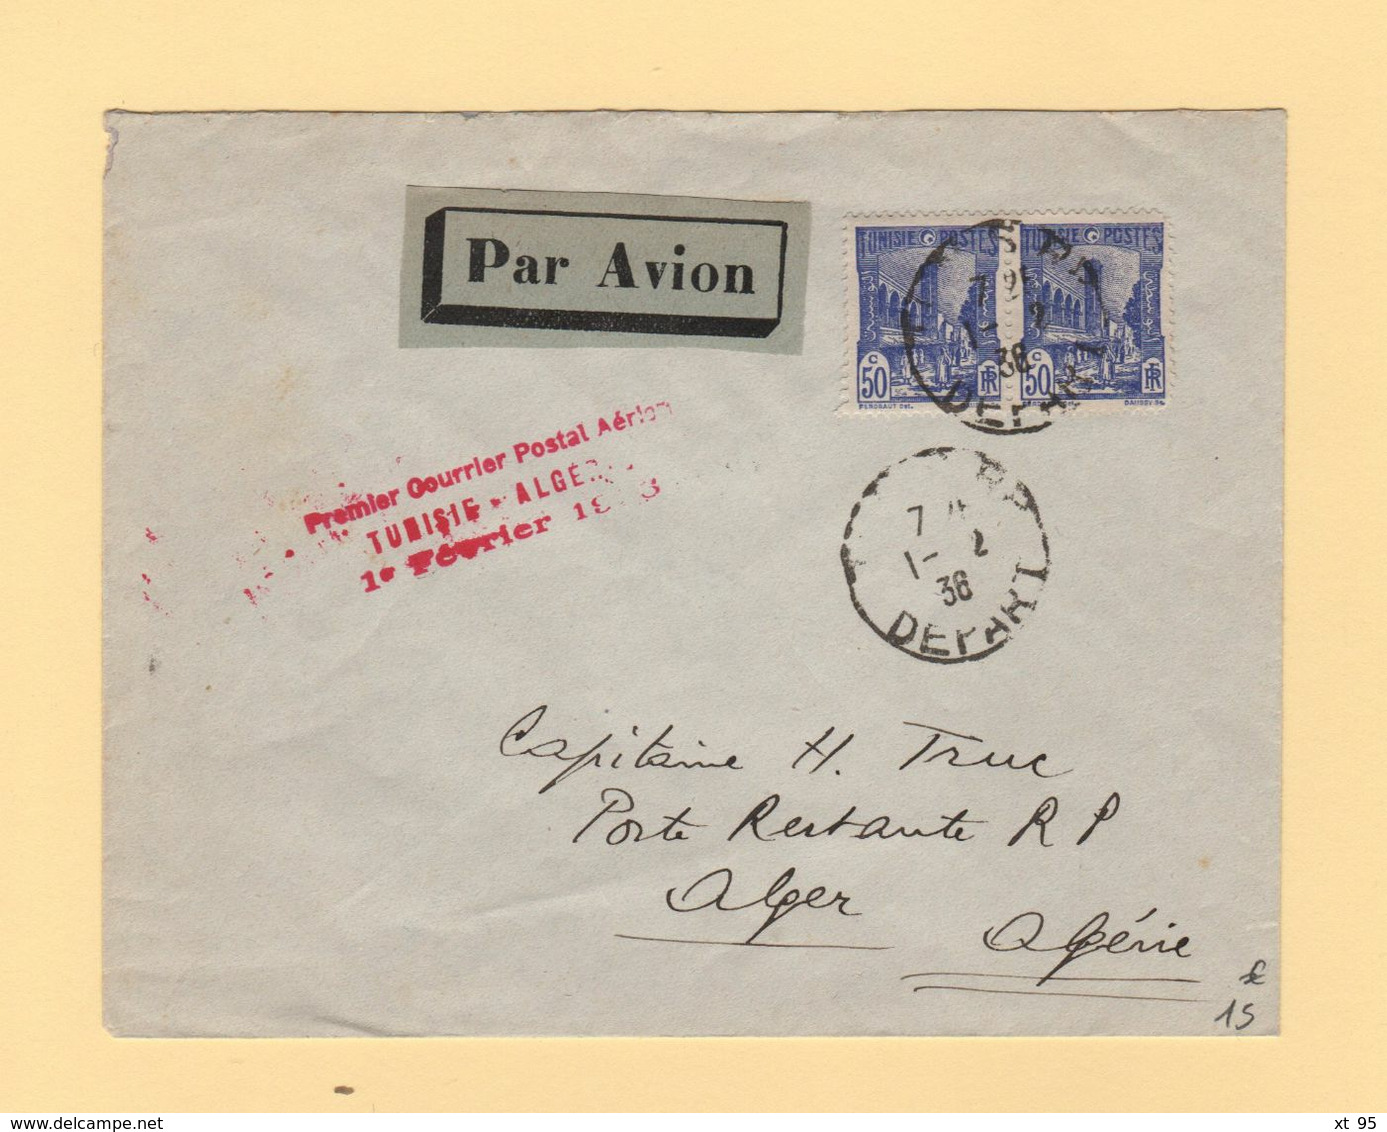 Tunisie - Premier Courrier Postal Aerien Tunisie Algerie - 1er Fevrier 1936 - Luchtpost